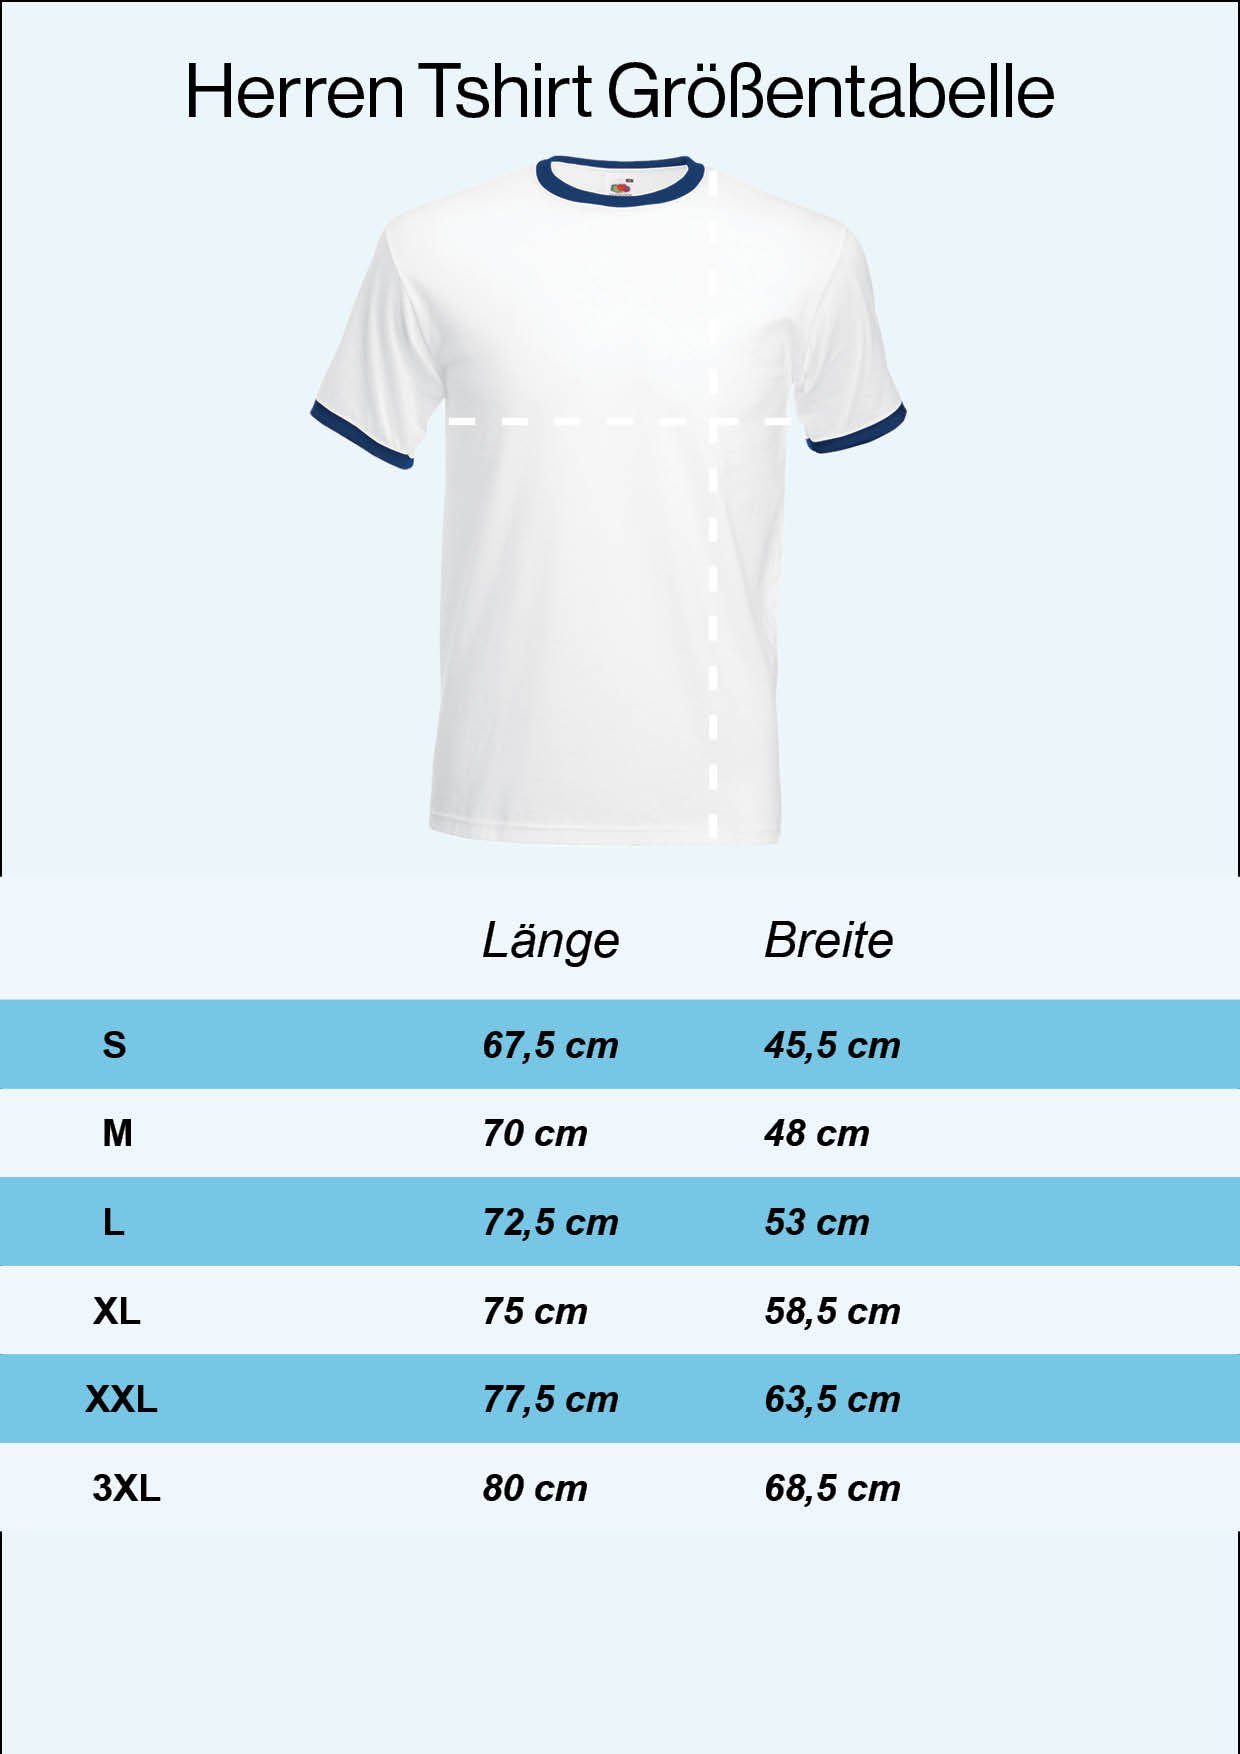 Fußball Youth Herren im T-Shirt Motiv T-Shirt Designz Trikot mit Finnland trendigem Look